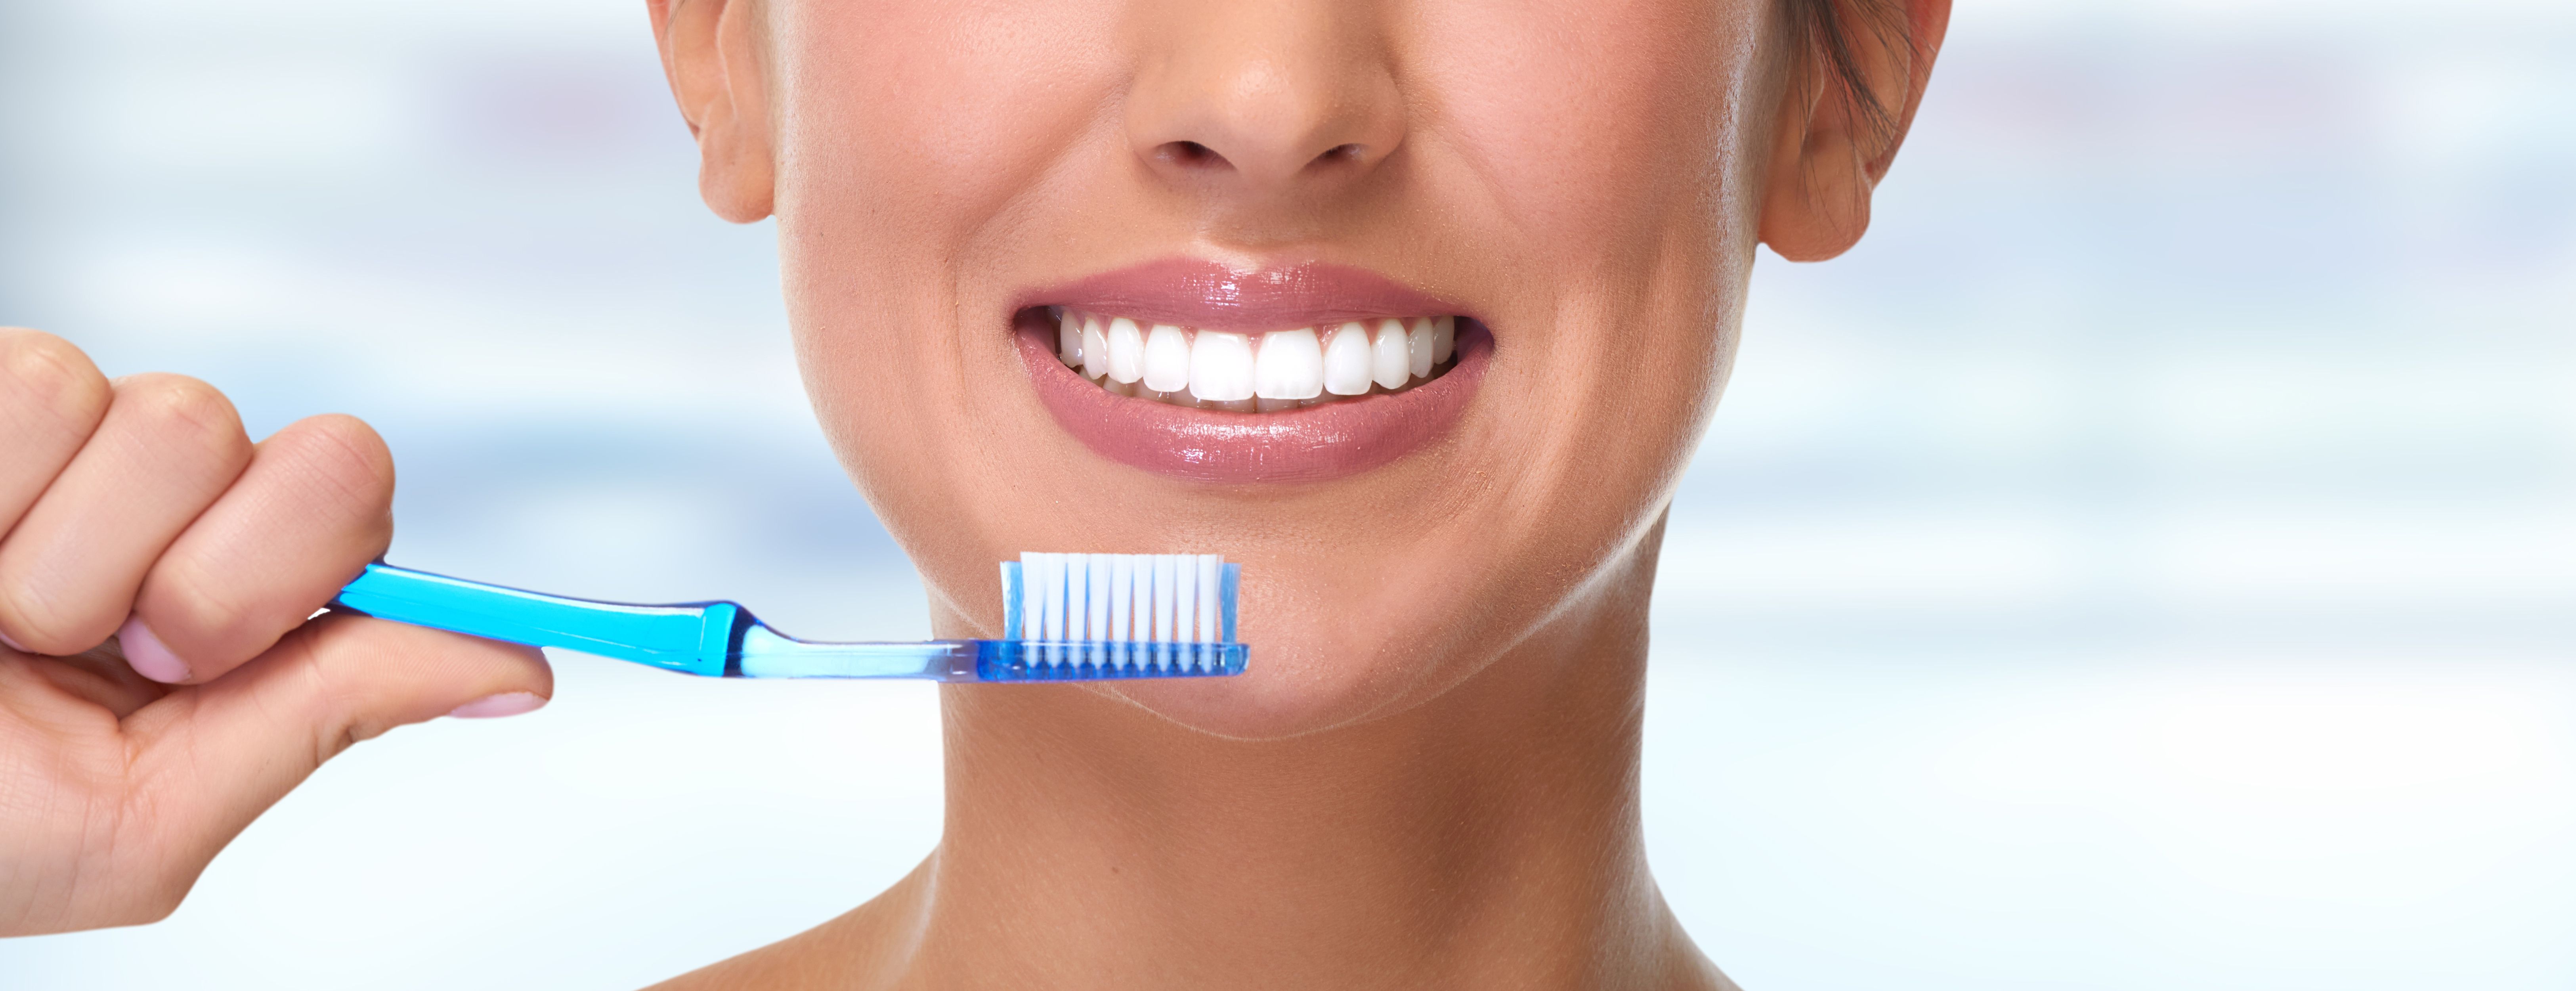 Limpieza dental: Especialidades de Clínica Dental Plaza 58 (Dr. Pedro Fernández Lorente)